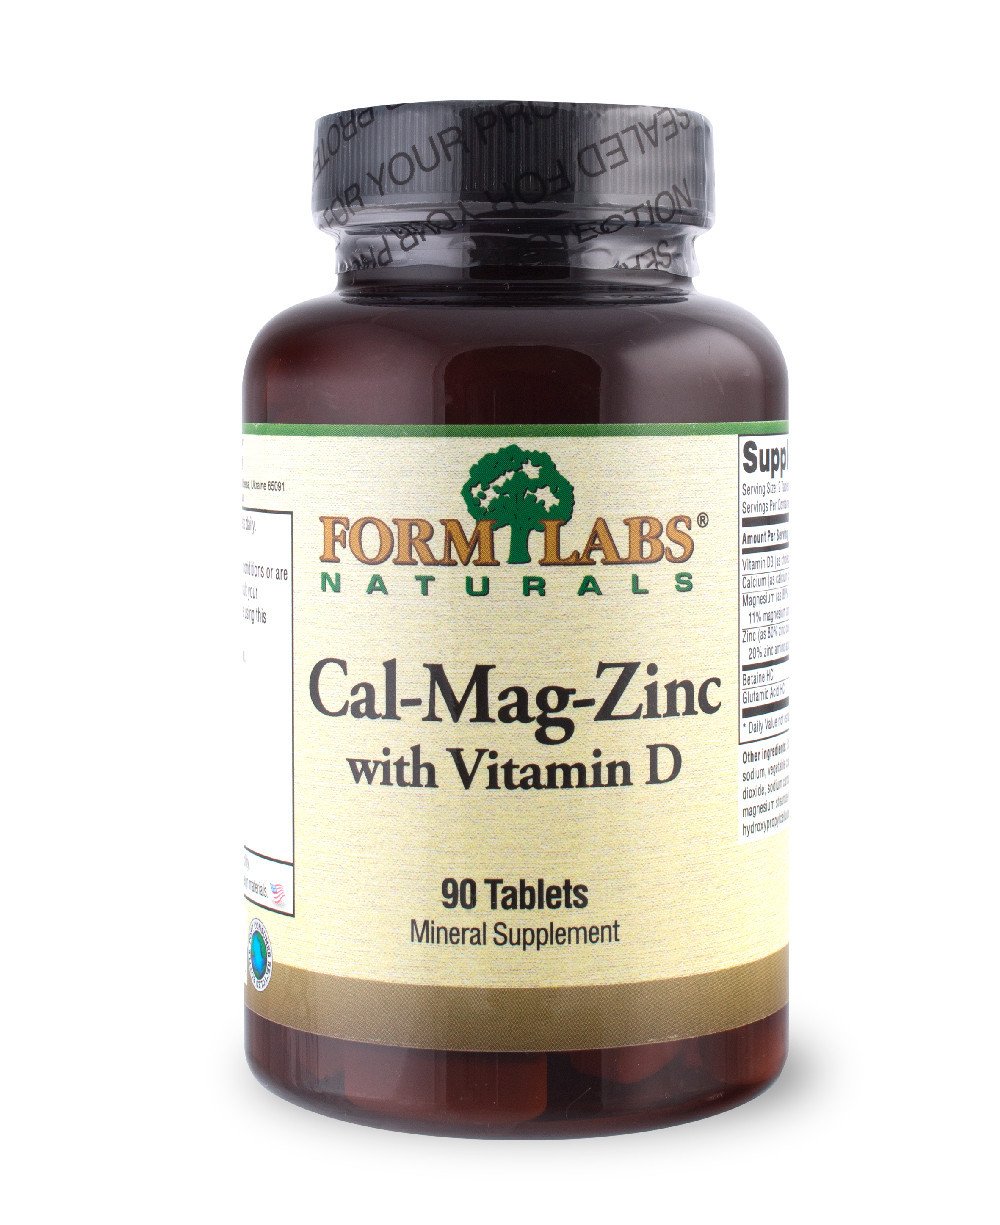 Cal-Mag-Zinc+Vitamin D, 180 ml, Form Labs Naturals. Vitaminas y minerales. General Health Immunity enhancement 